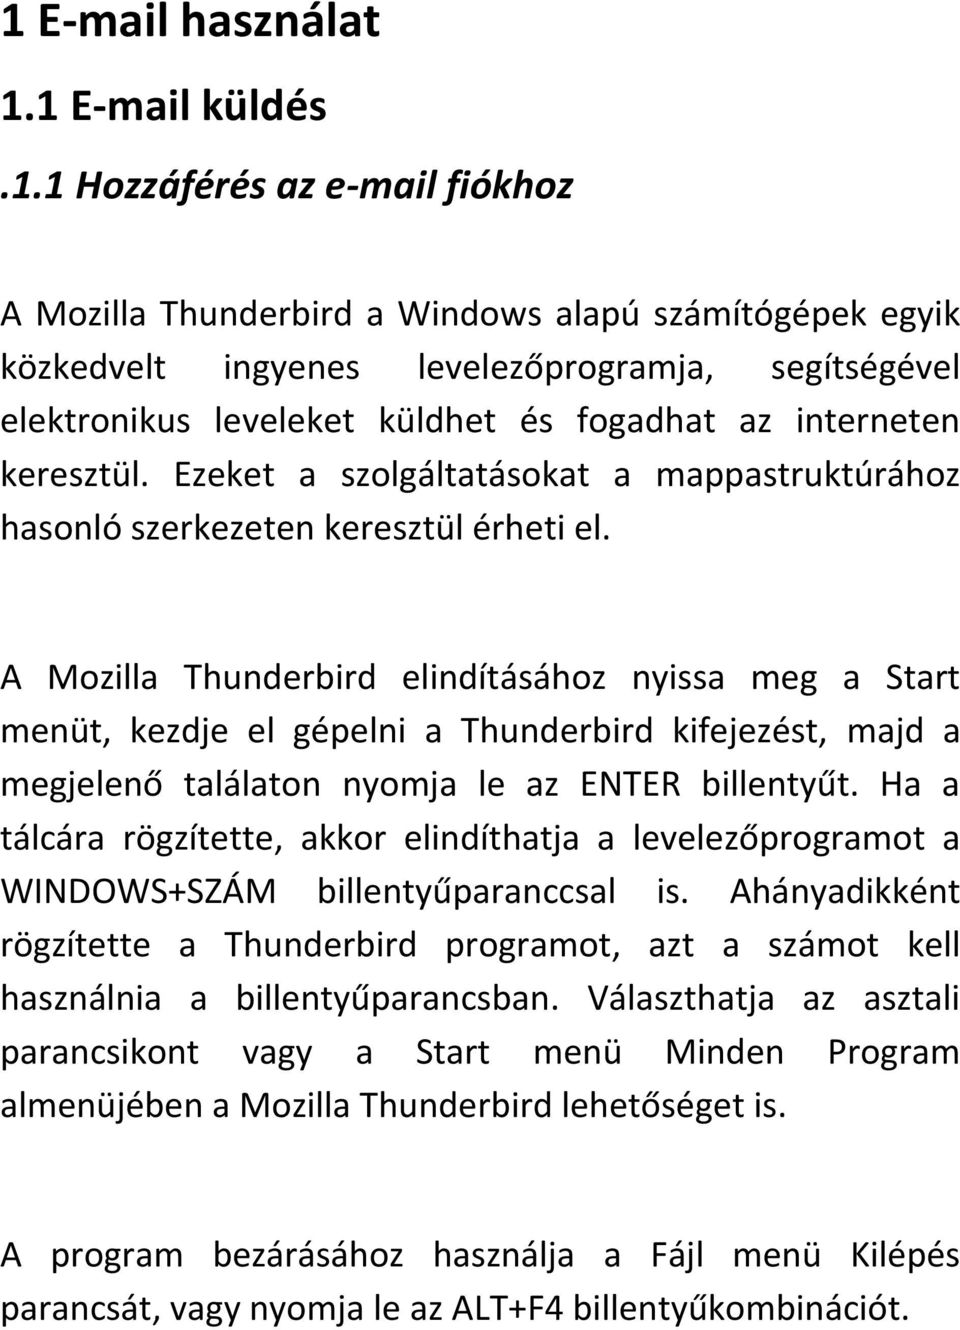 A Mozilla Thunderbird elindításához nyissa meg a Start menüt, kezdje el gépelni a Thunderbird kifejezést, majd a megjelenő találaton nyomja le az ENTER billentyűt.